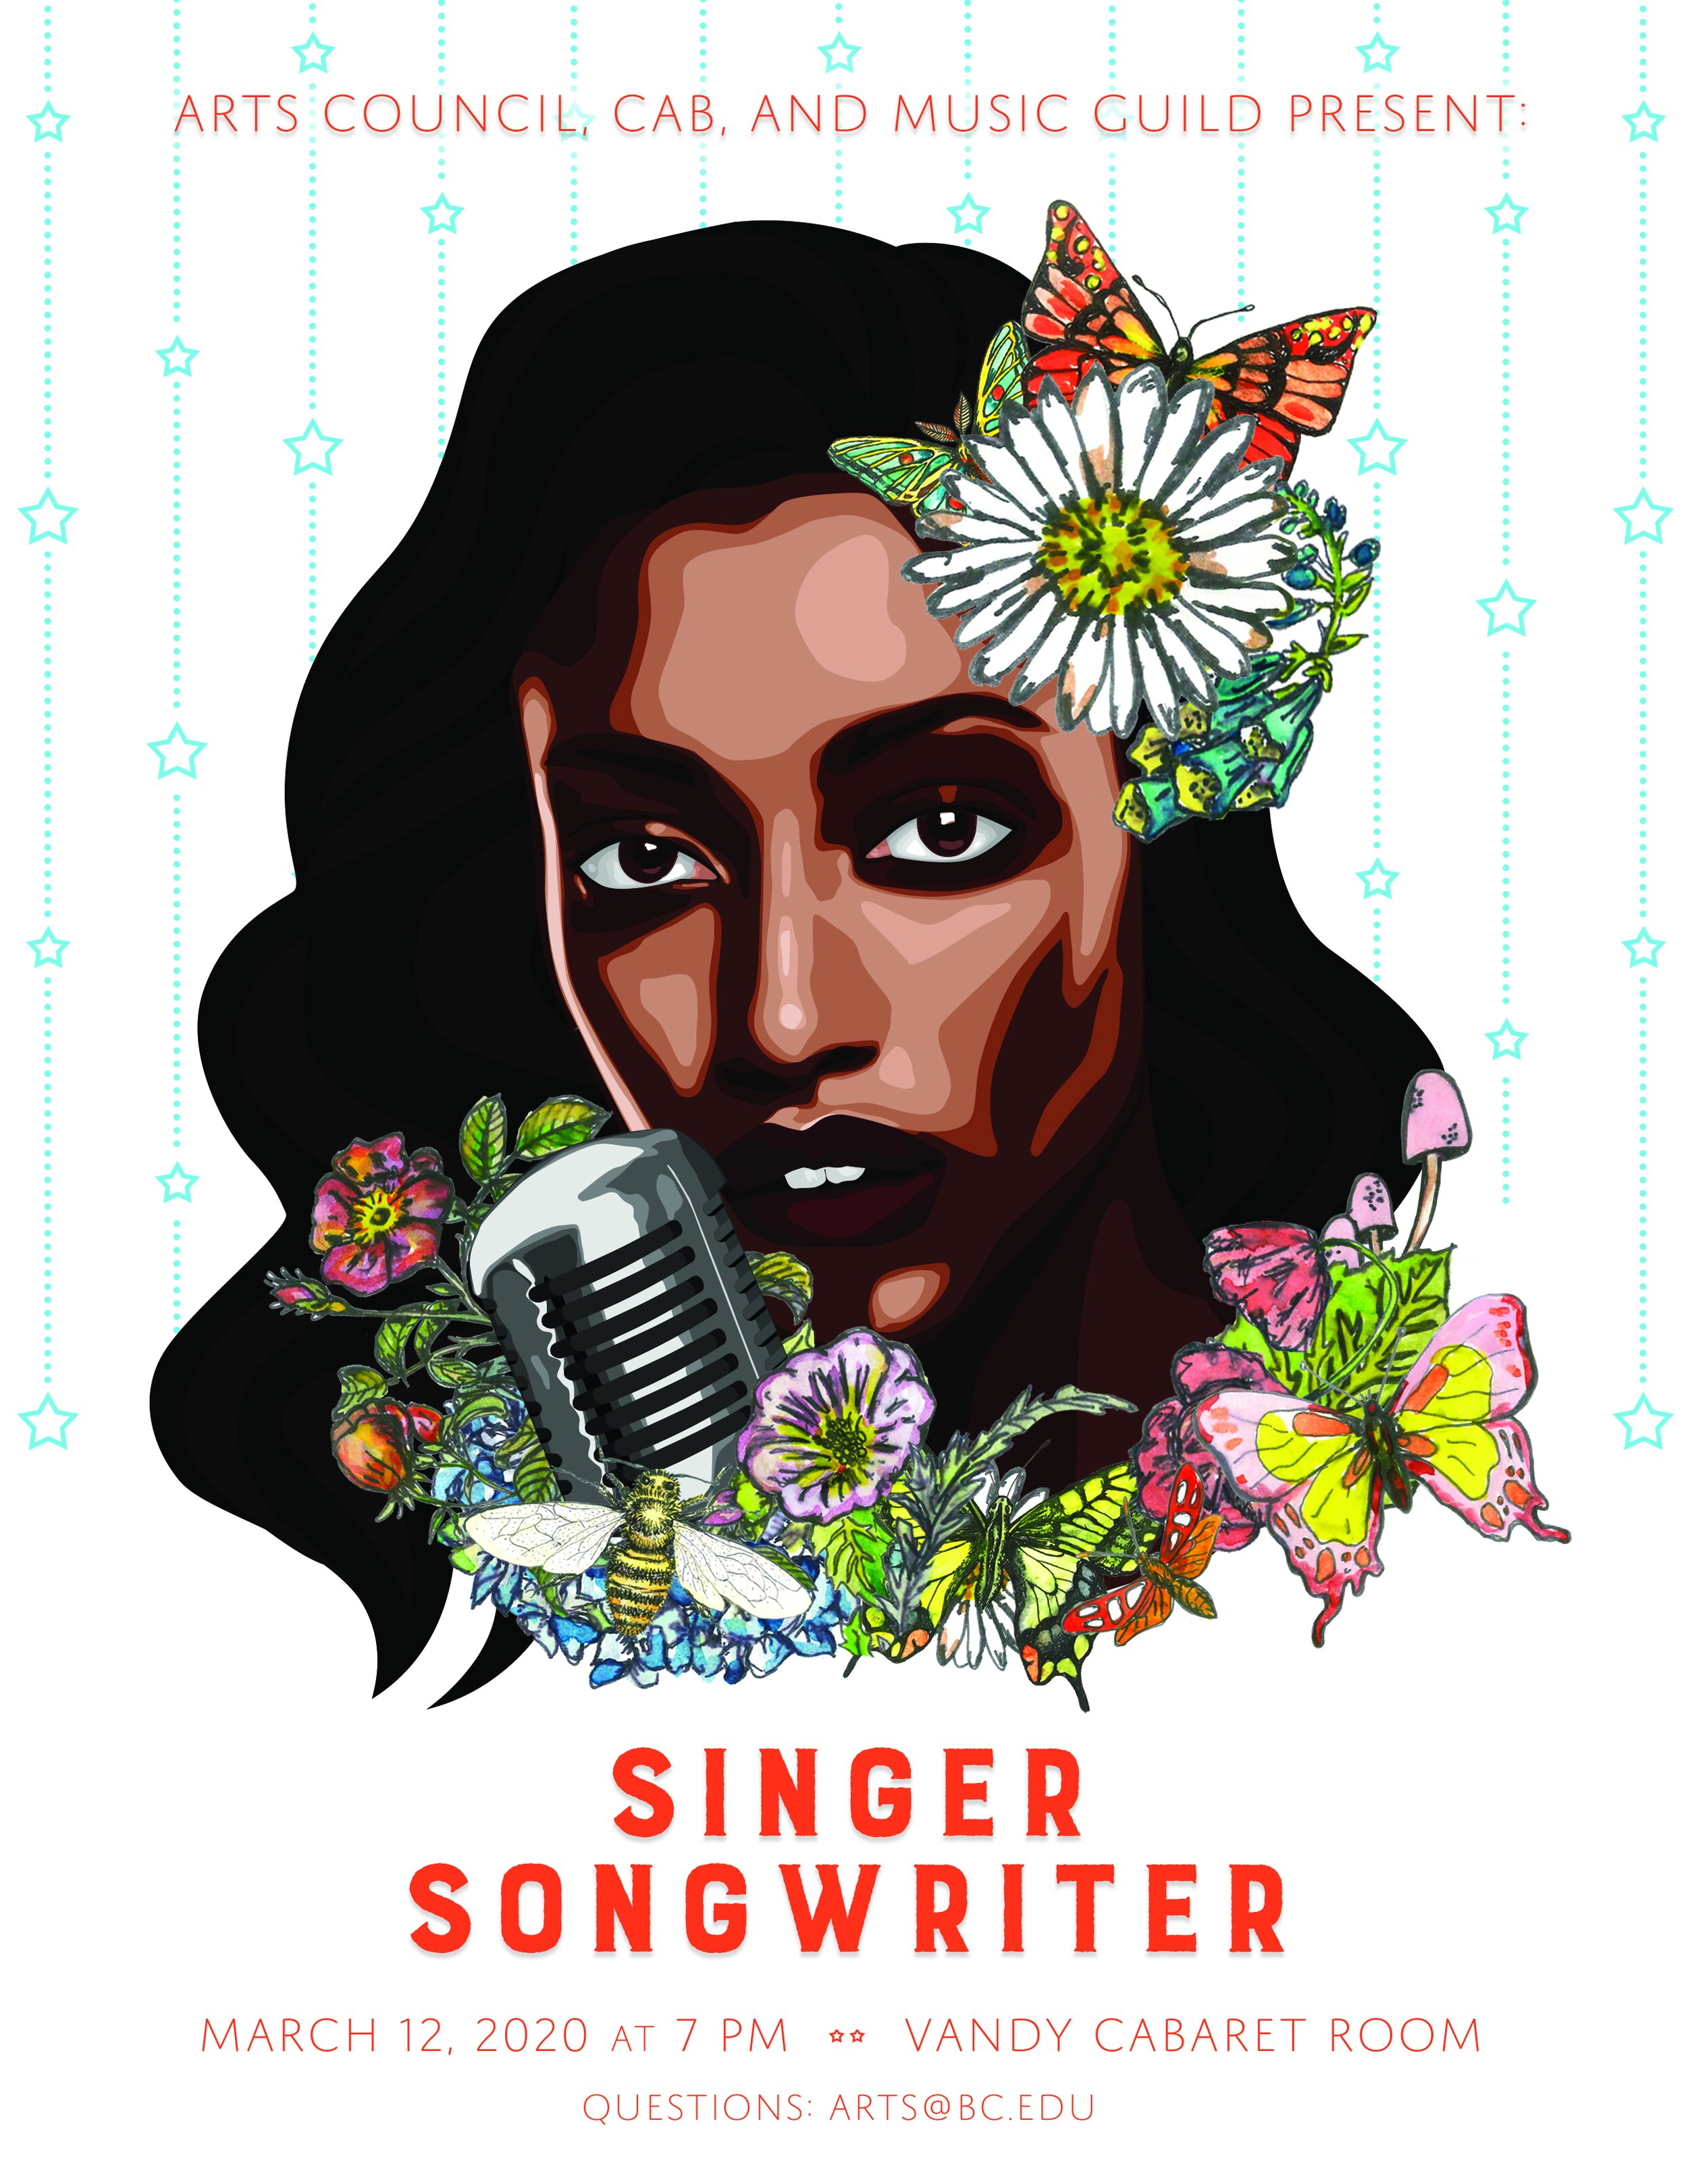 Singer Songwriter Competition 2020 poster designed by Caroline Denning ’22